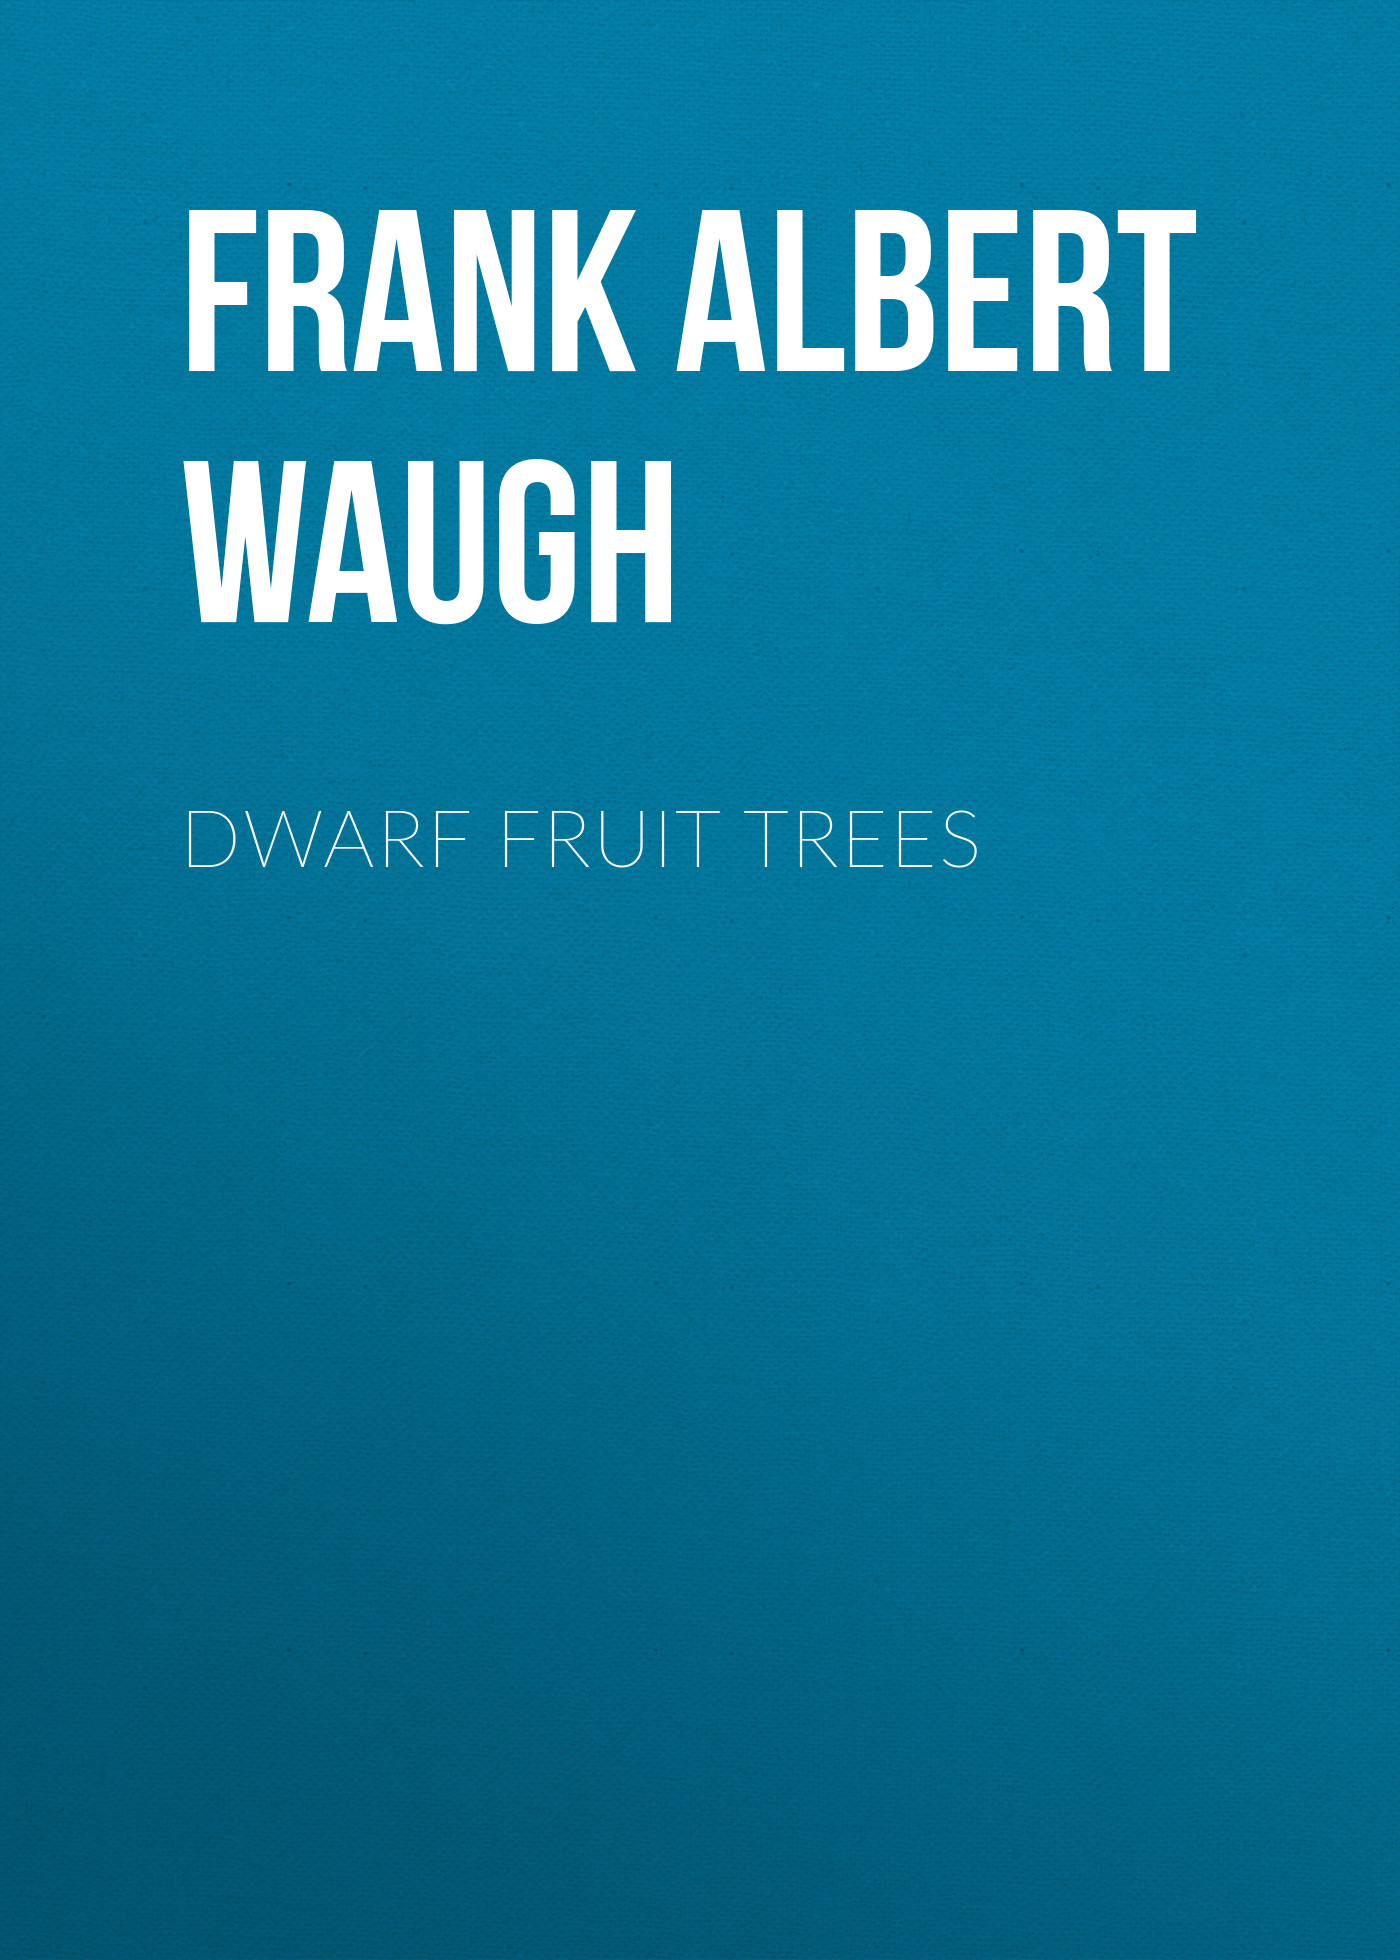 Книга Dwarf Fruit Trees из серии , созданная Frank Albert Waugh, может относится к жанру Зарубежная классика, Биология, Биология, Зарубежная образовательная литература, Зарубежная старинная литература. Стоимость электронной книги Dwarf Fruit Trees с идентификатором 34336738 составляет 0 руб.